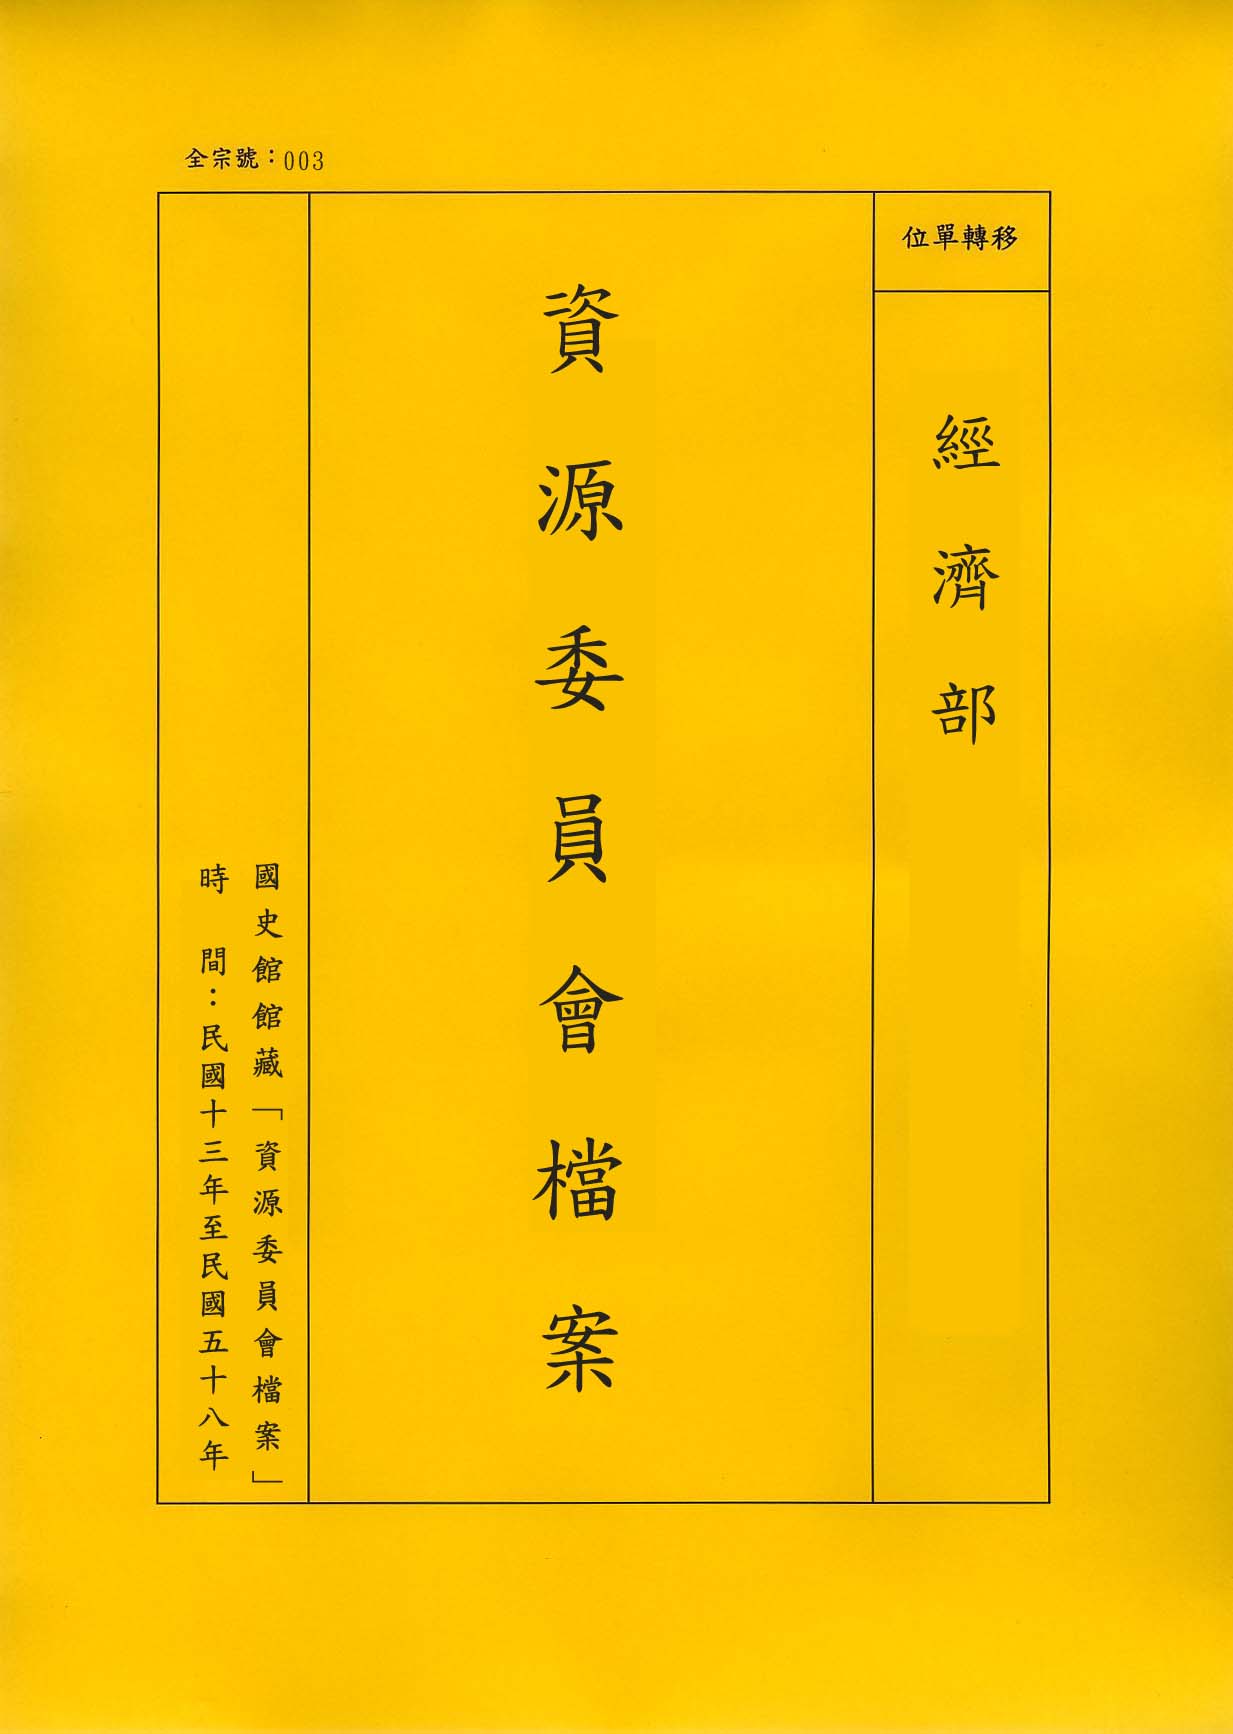 卷名:織襪工廠調查表─上海(四)(003-010306-0197)